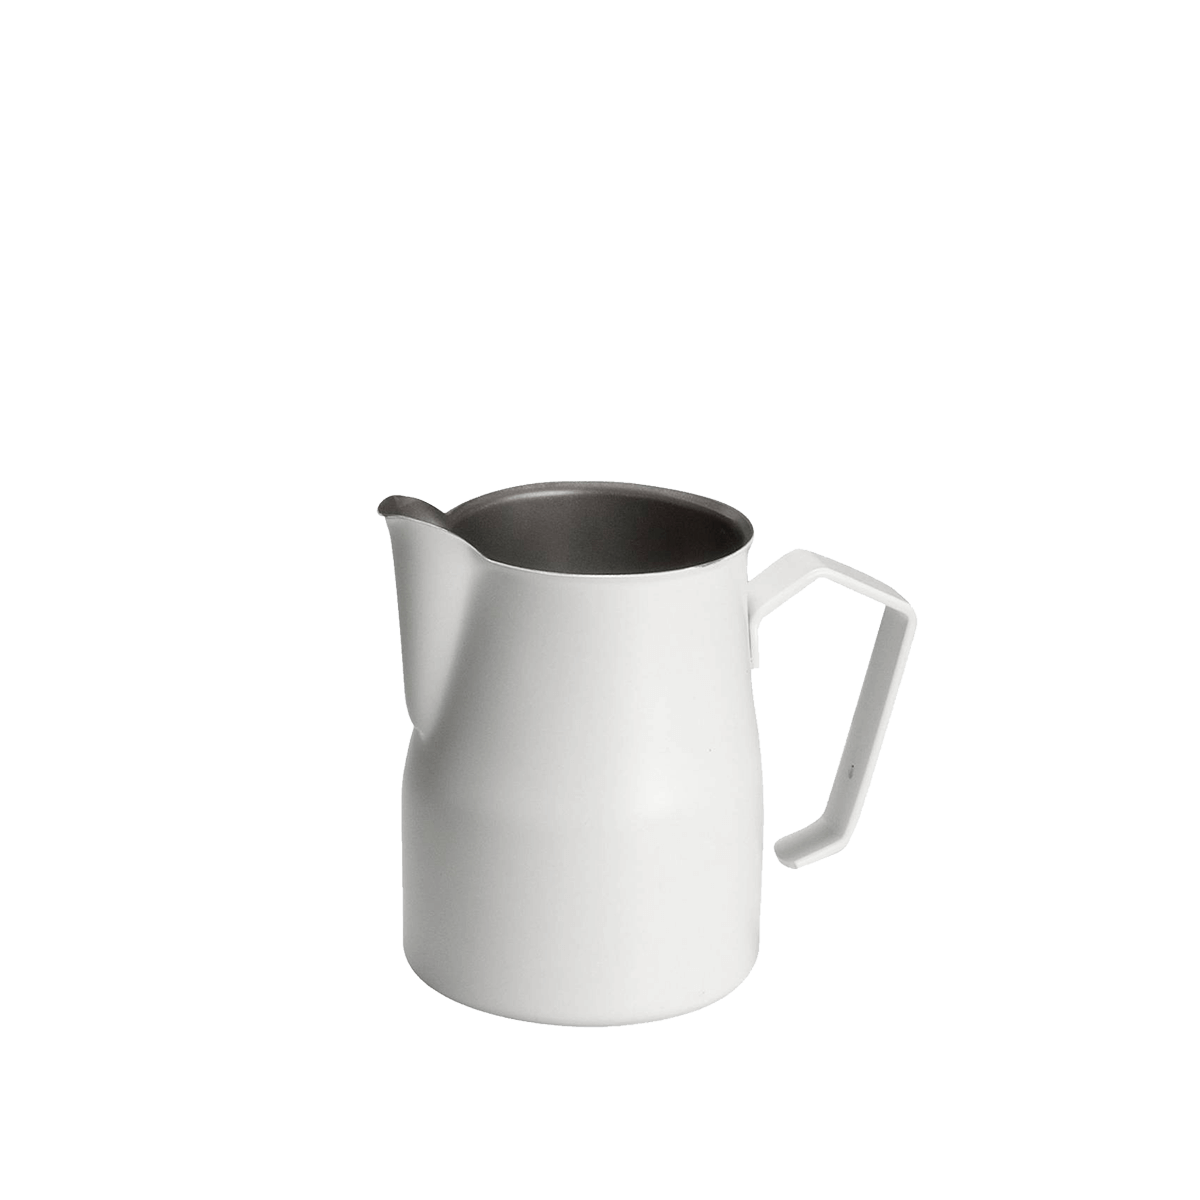 Teflon milk pitcher - Motta - White